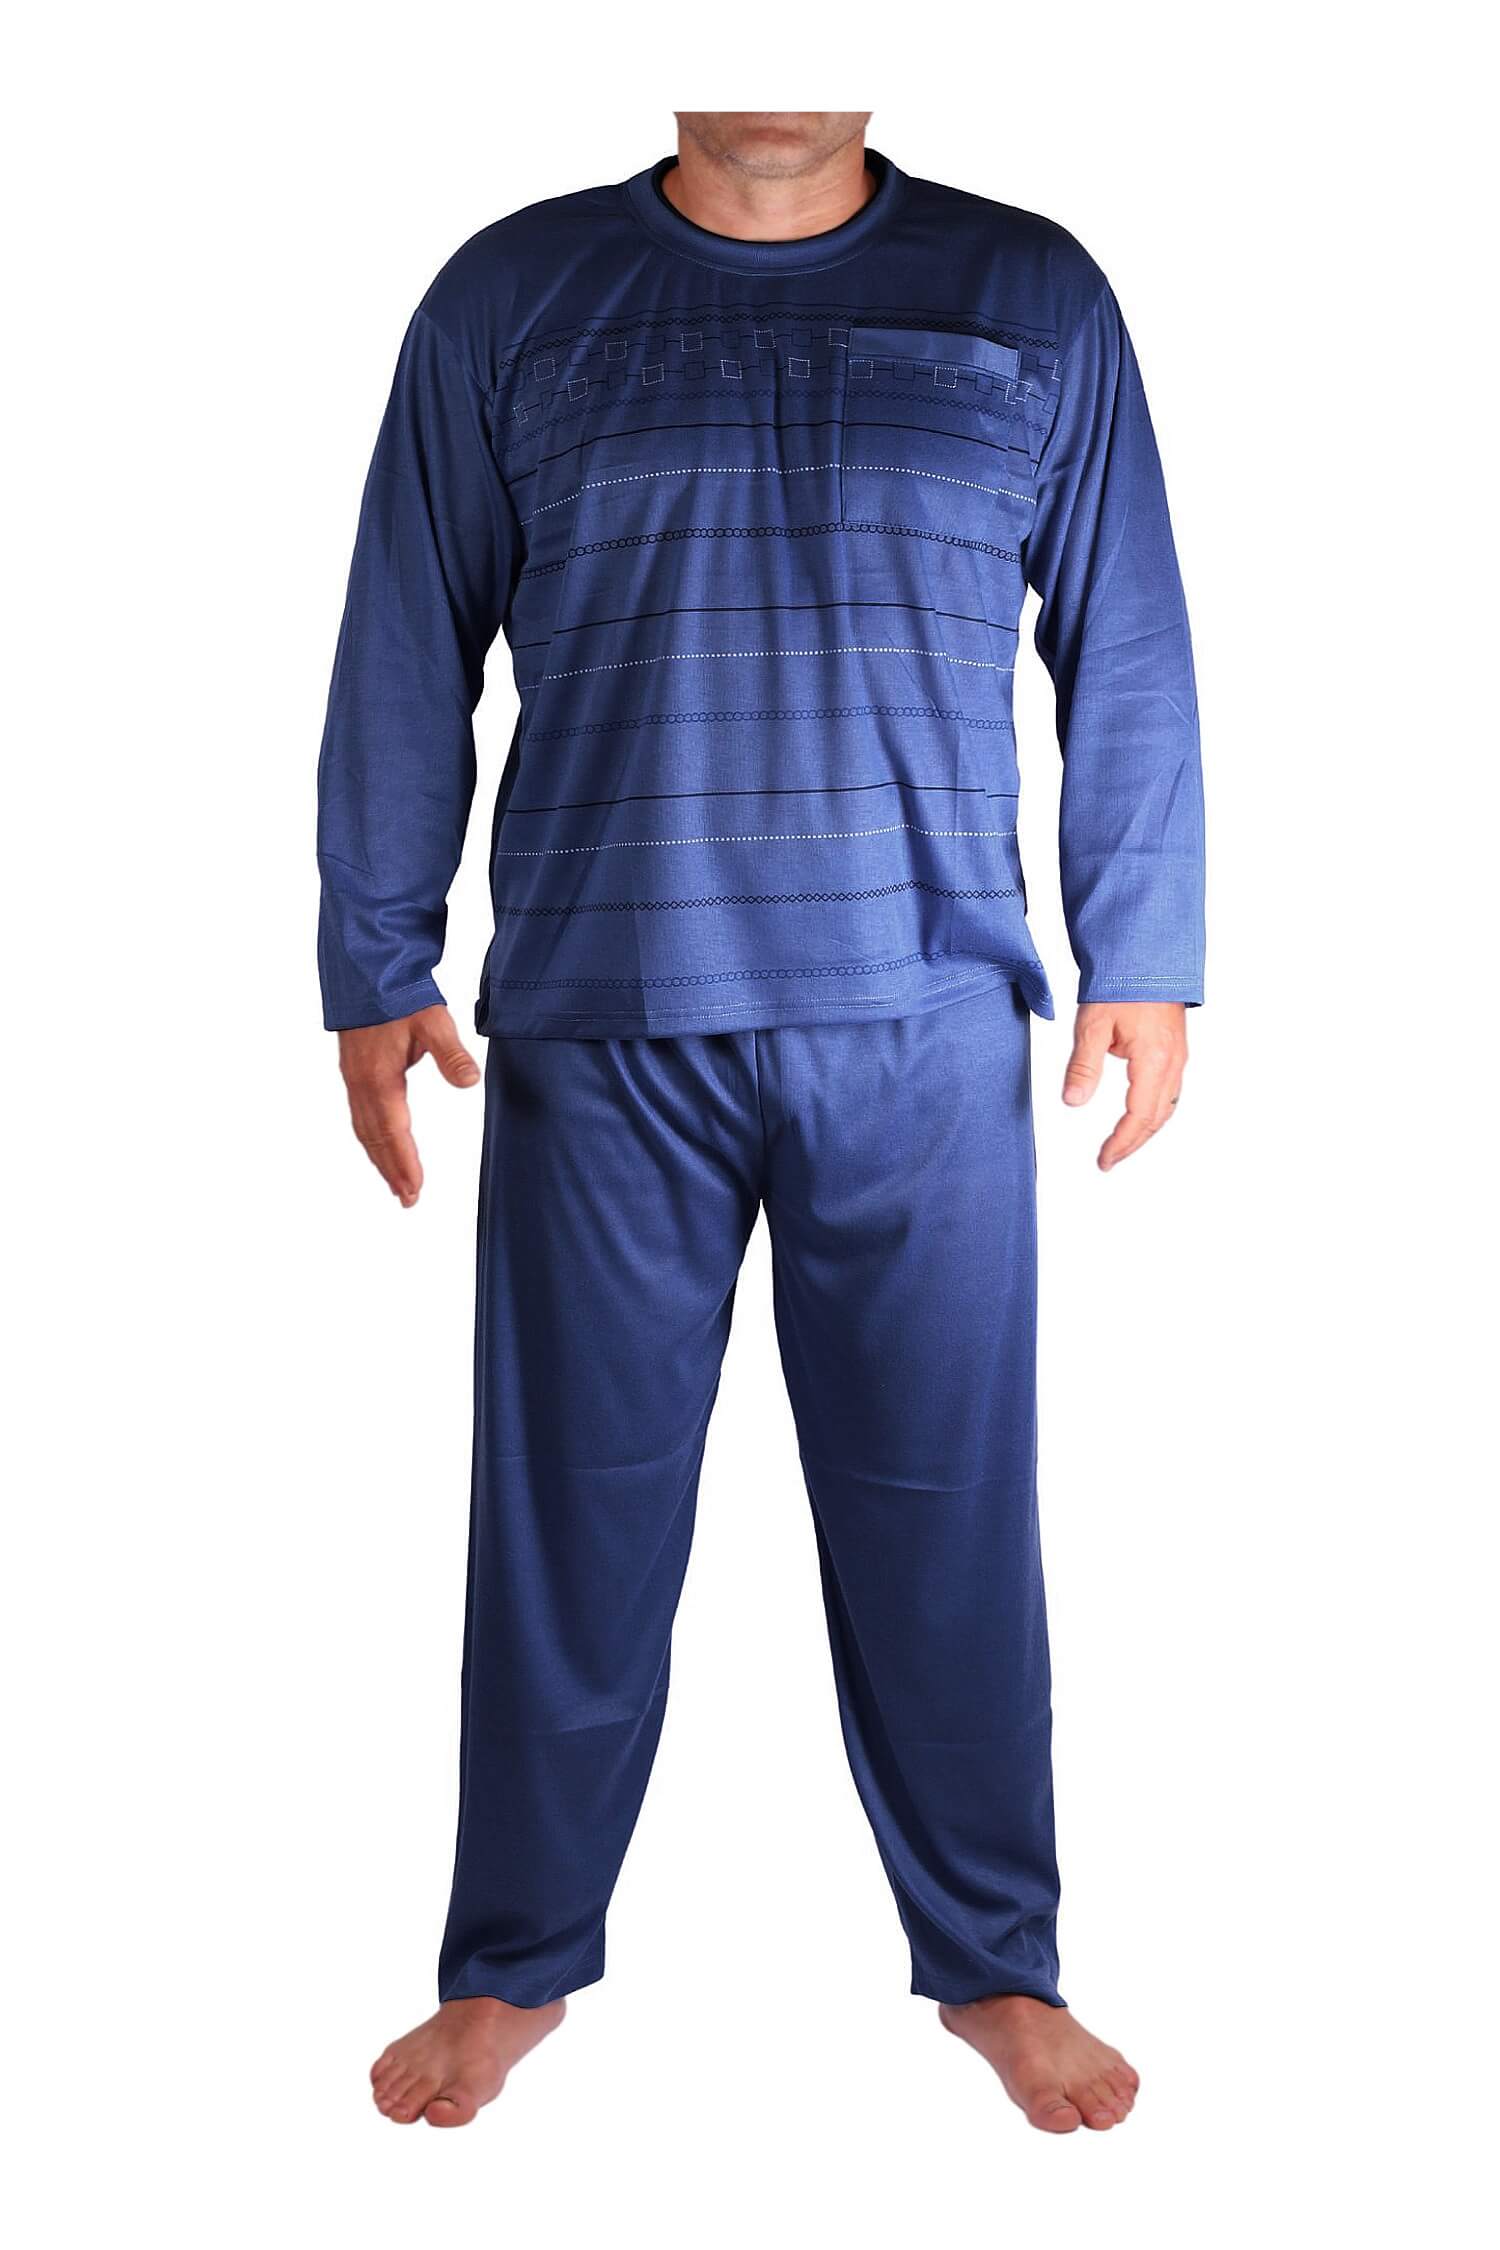 Milan pyžamo pánské dlouhé V1611 XL tmavě modrá